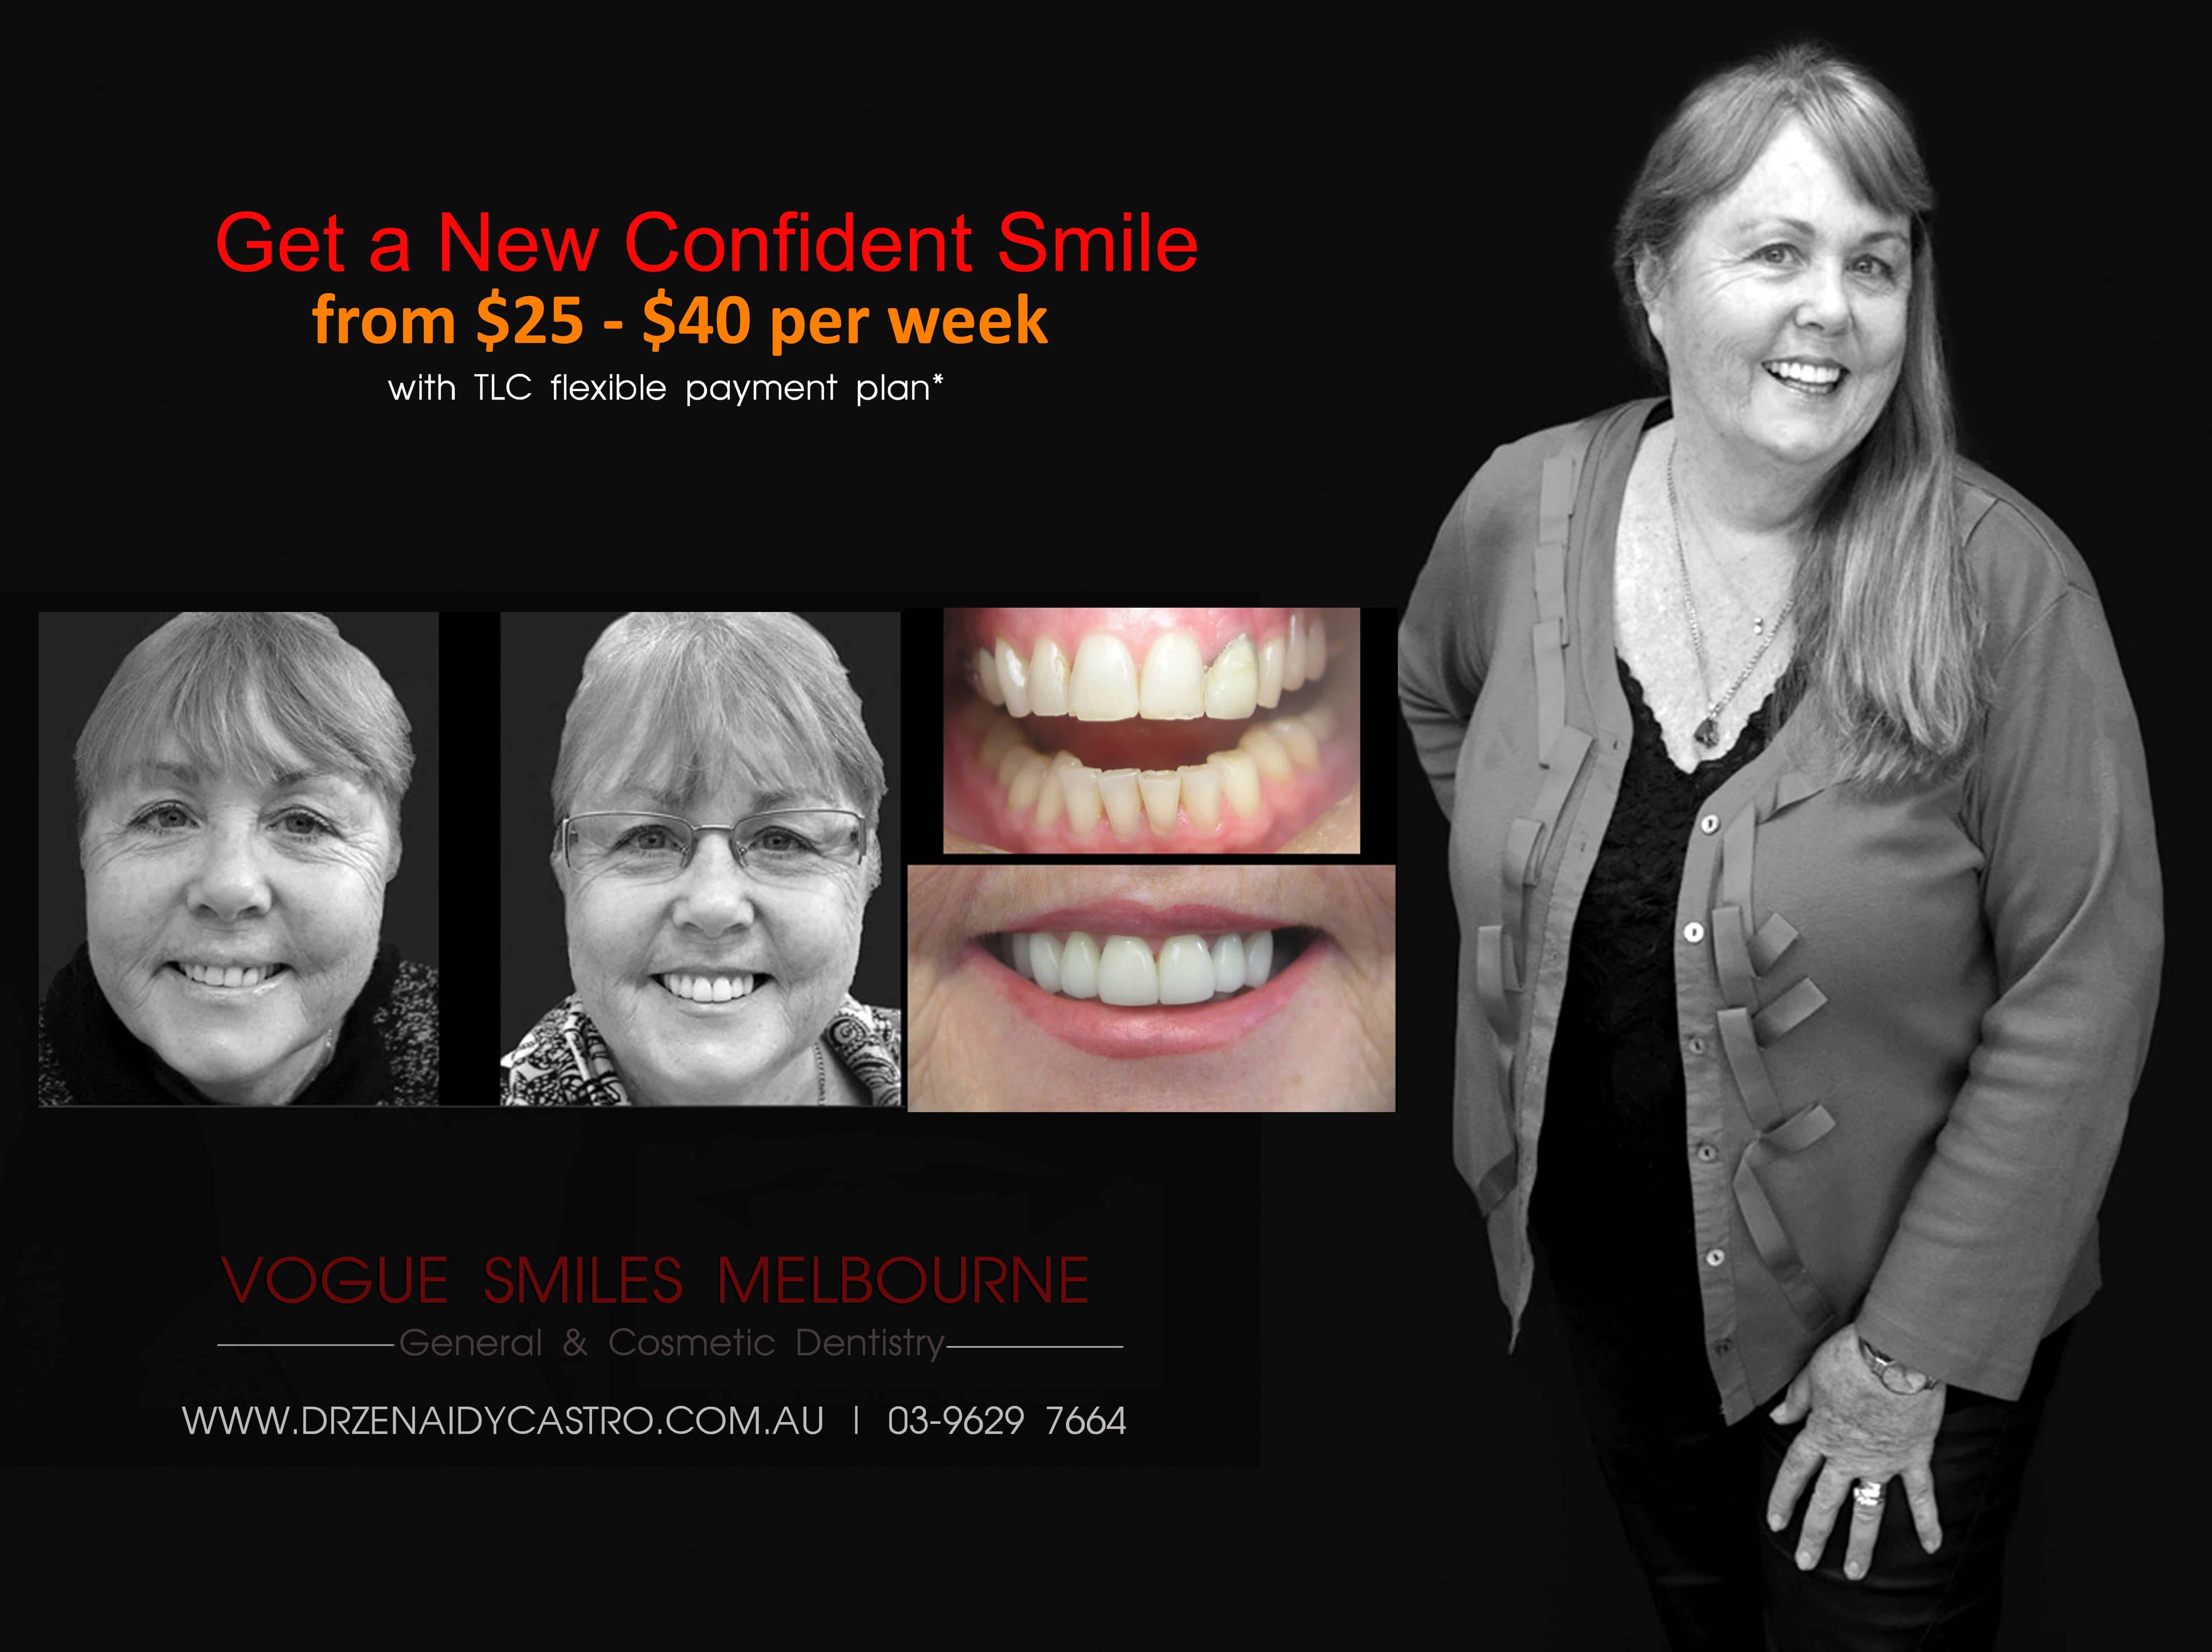 Dental tourism - dental holidays, Leading Dental Tourism destination - Melbourne Australia, best of dental holiday specials and packages Melbourne, dental tourism Australia